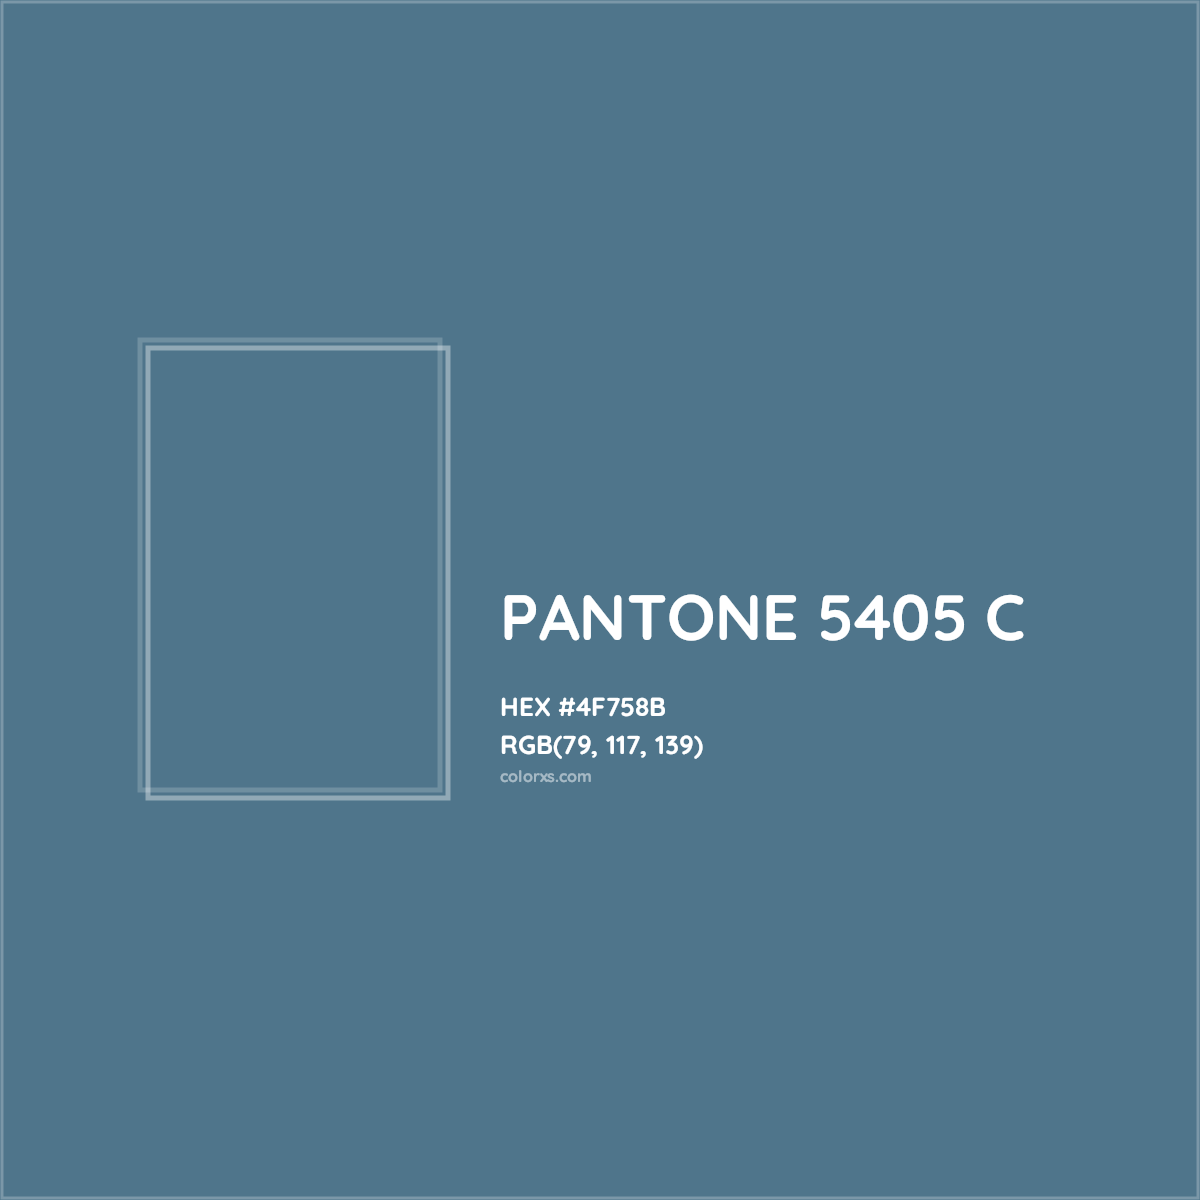 HEX #4F758B PANTONE 5405 C CMS Pantone PMS - Color Code